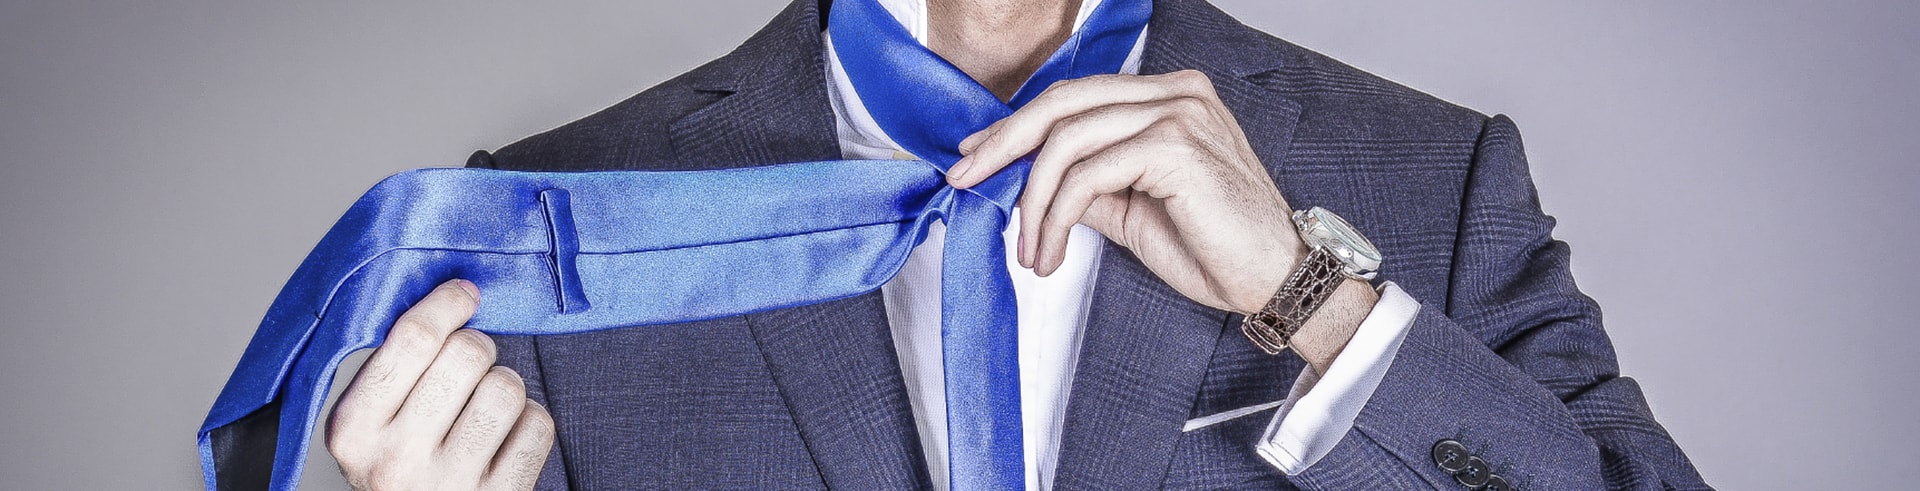 Slipsebanditten - lær at binde et slips